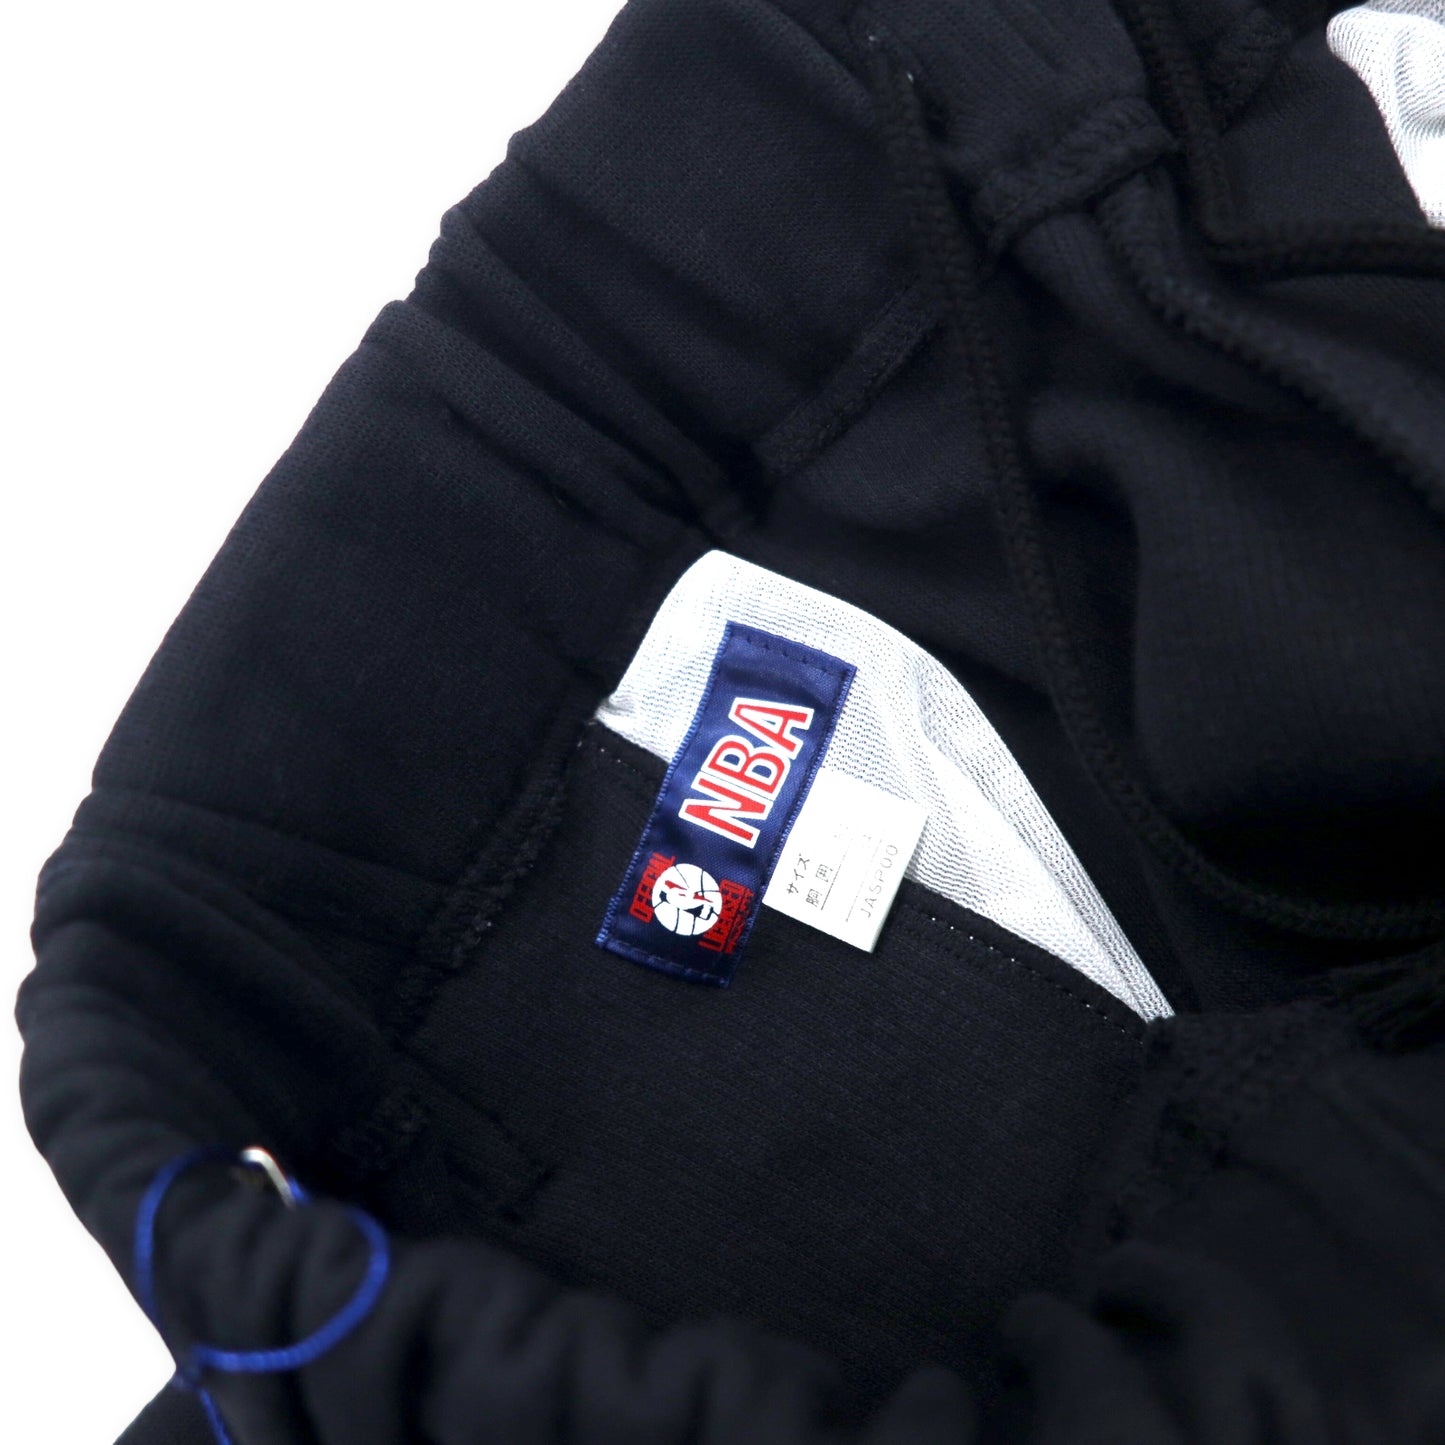 NBA 90年代 スウェット トラックパンツ O ブラック コットン 裾スナップボタン 日本製 未使用品